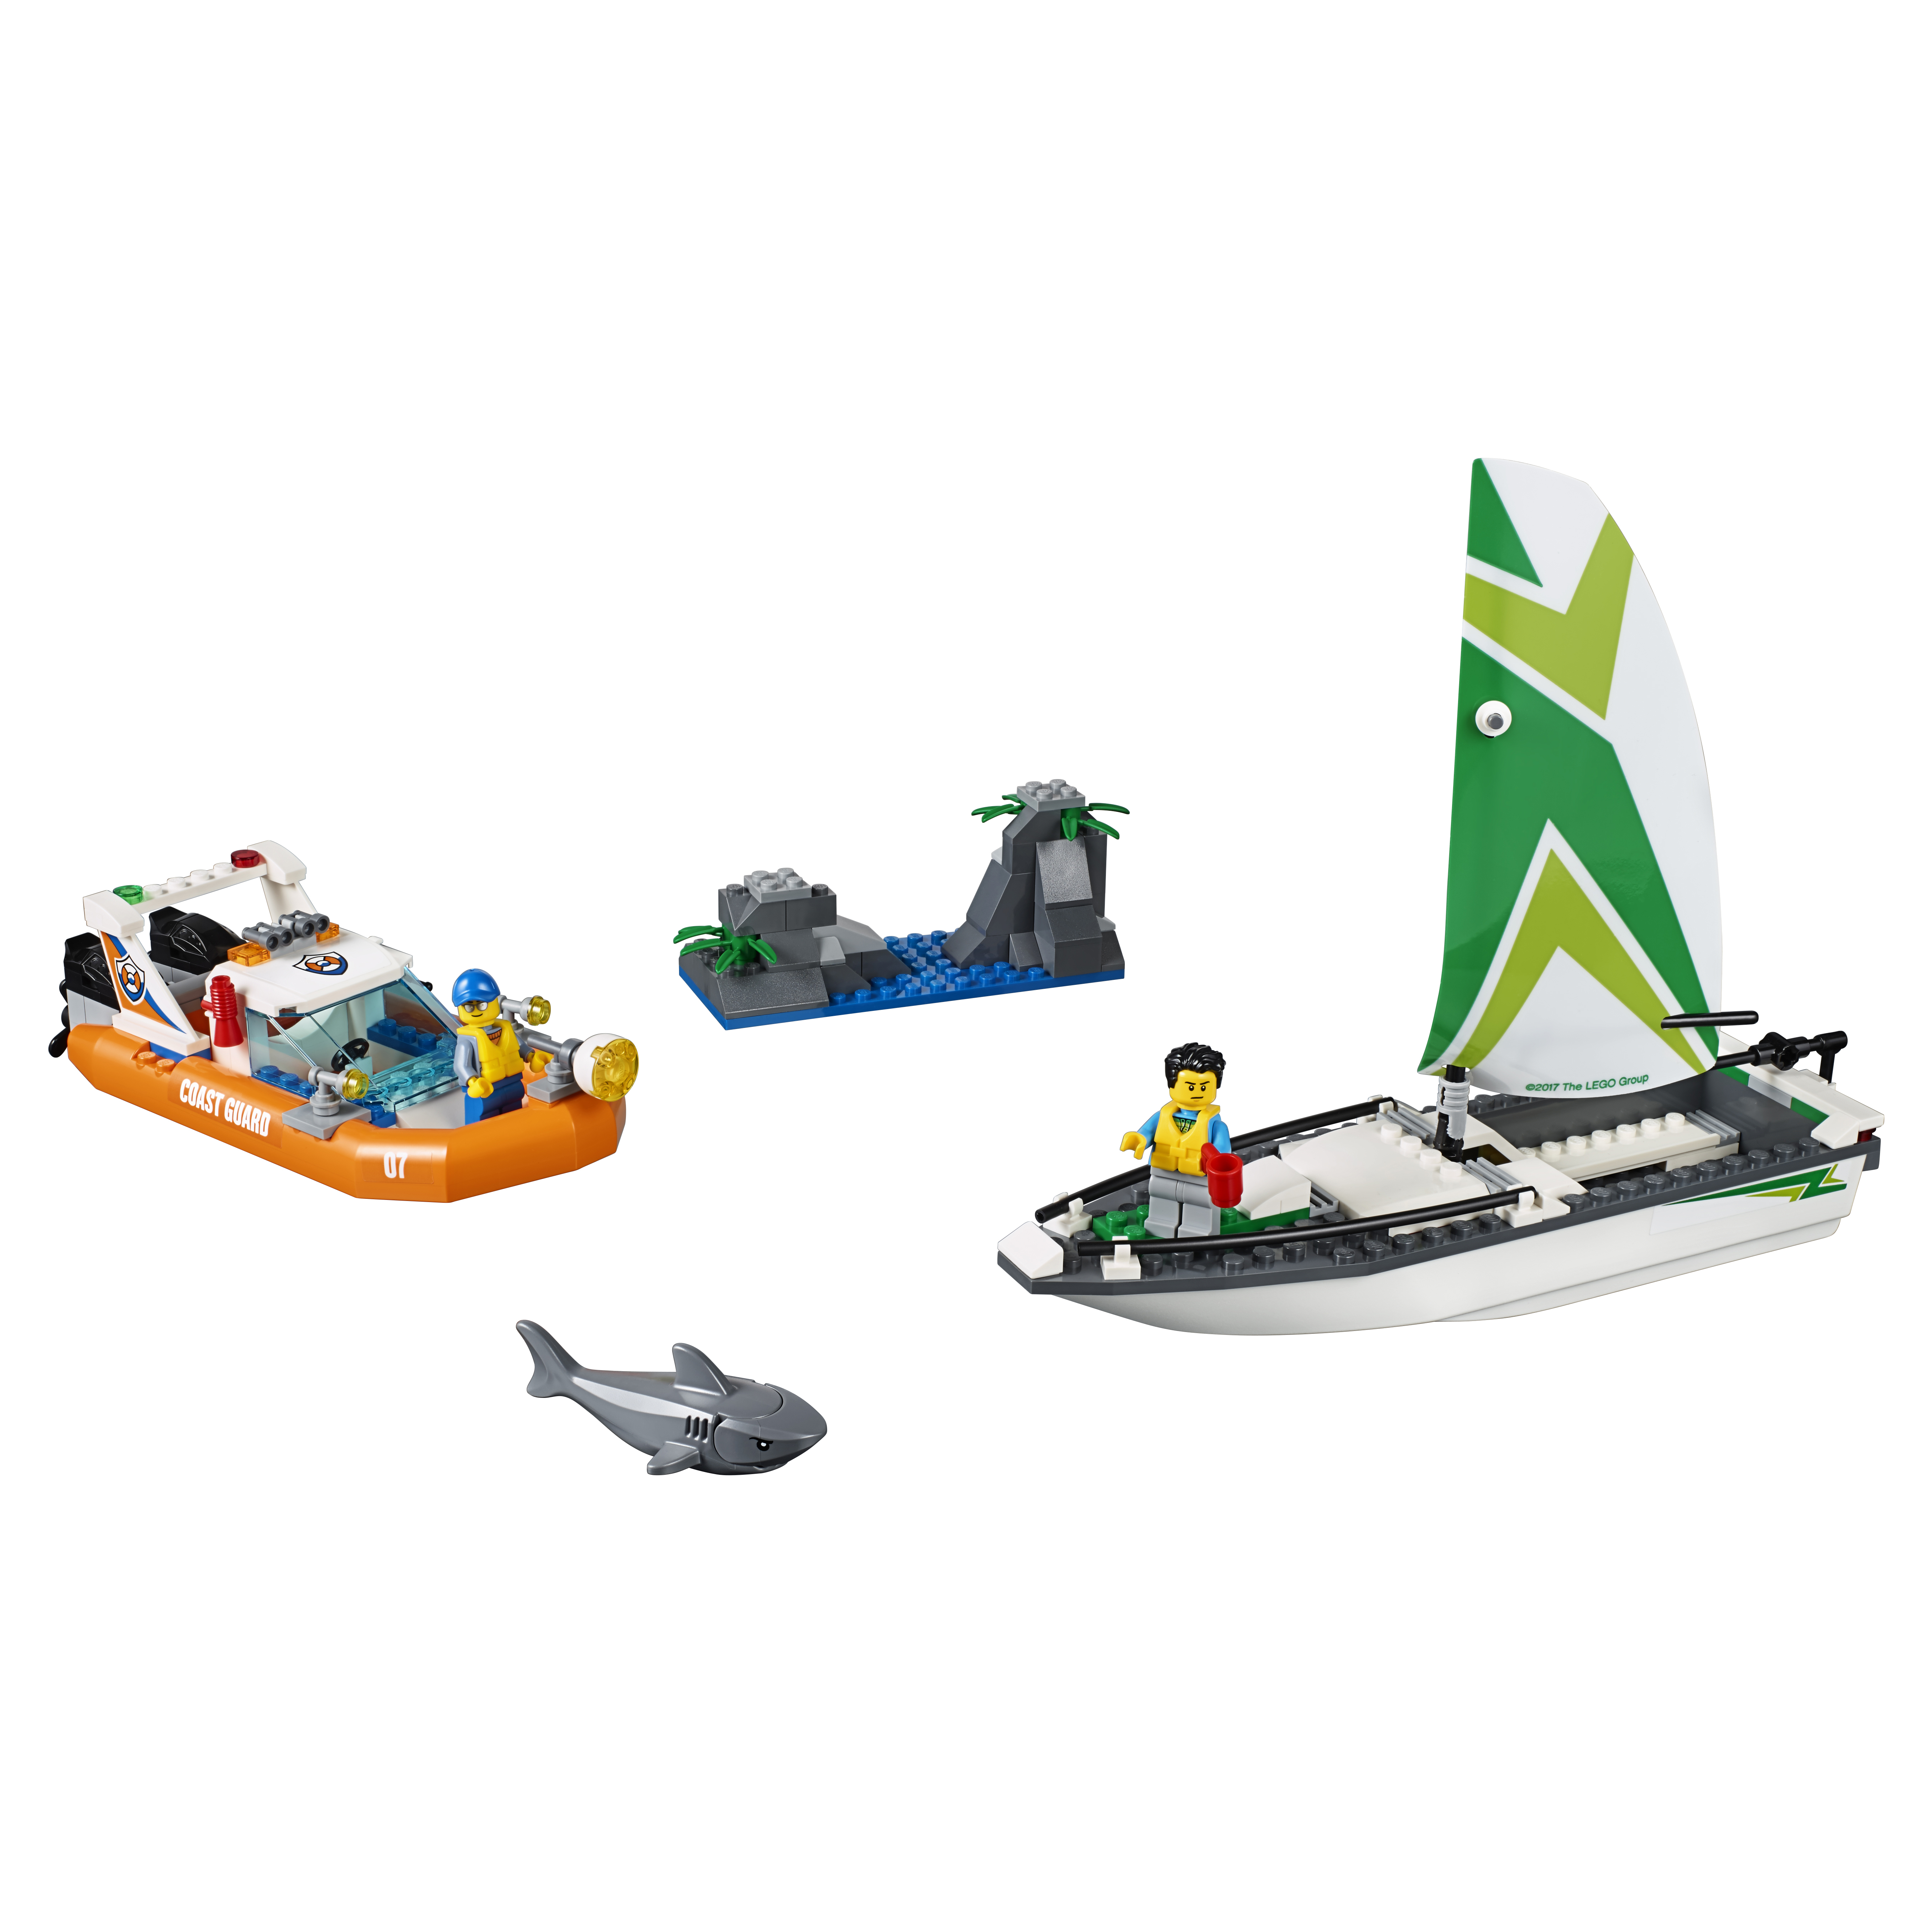 Купить Конструктор lego city coast guard операция по спасению парусной лодки 60168, Конструктор LEGO City Coast Guard Операция по спасению парусной лодки (60168),